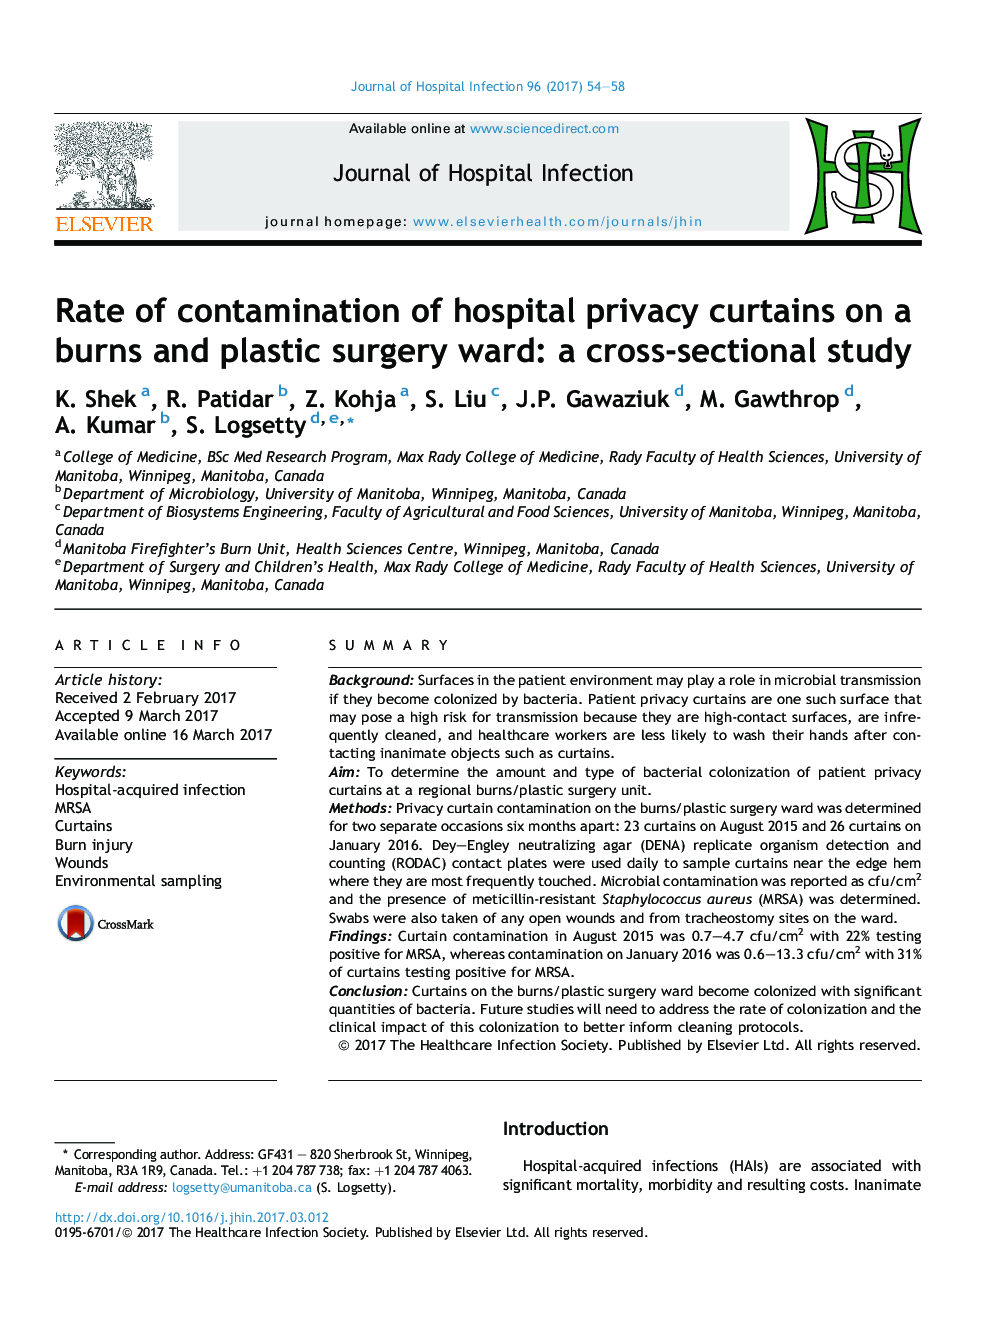 میزان آلودگی پرده های بیمارستان در یک سوختگی و بخش جراحی پلاستیک: یک مطالعه مقطعی 